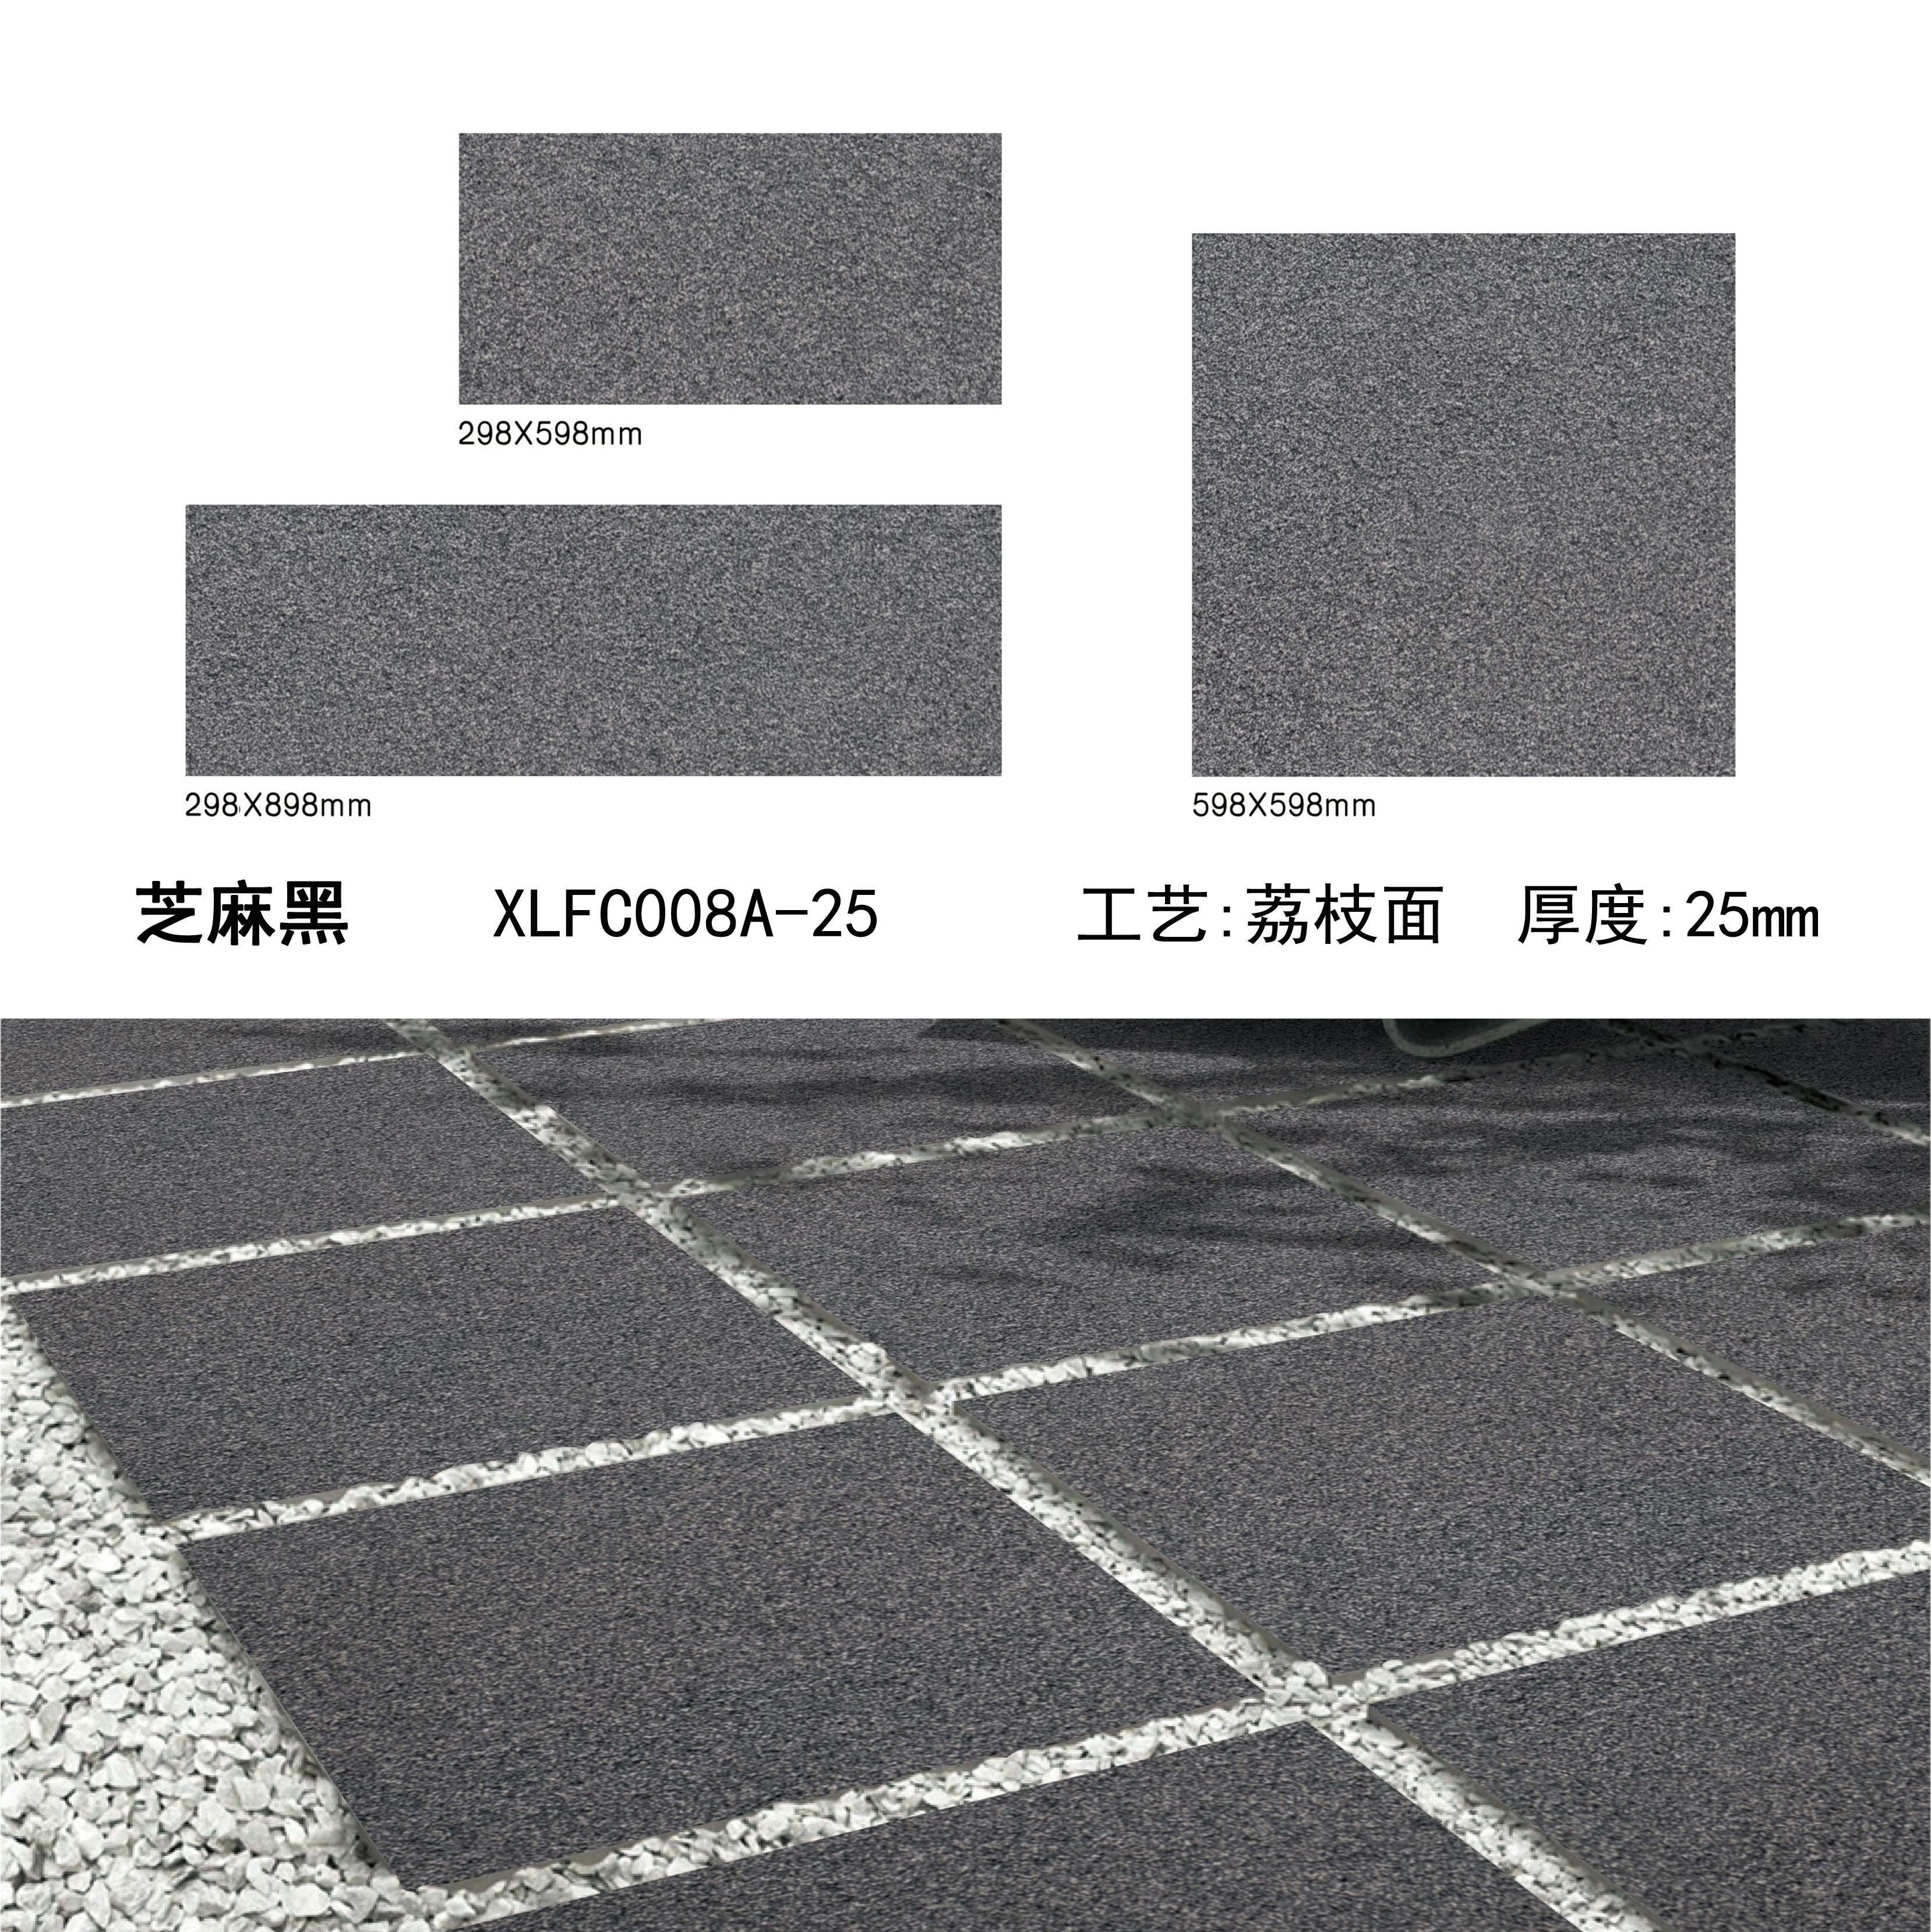 芝麻黑PC砖（08A-25）-南安市欣龙建材发展有限公司